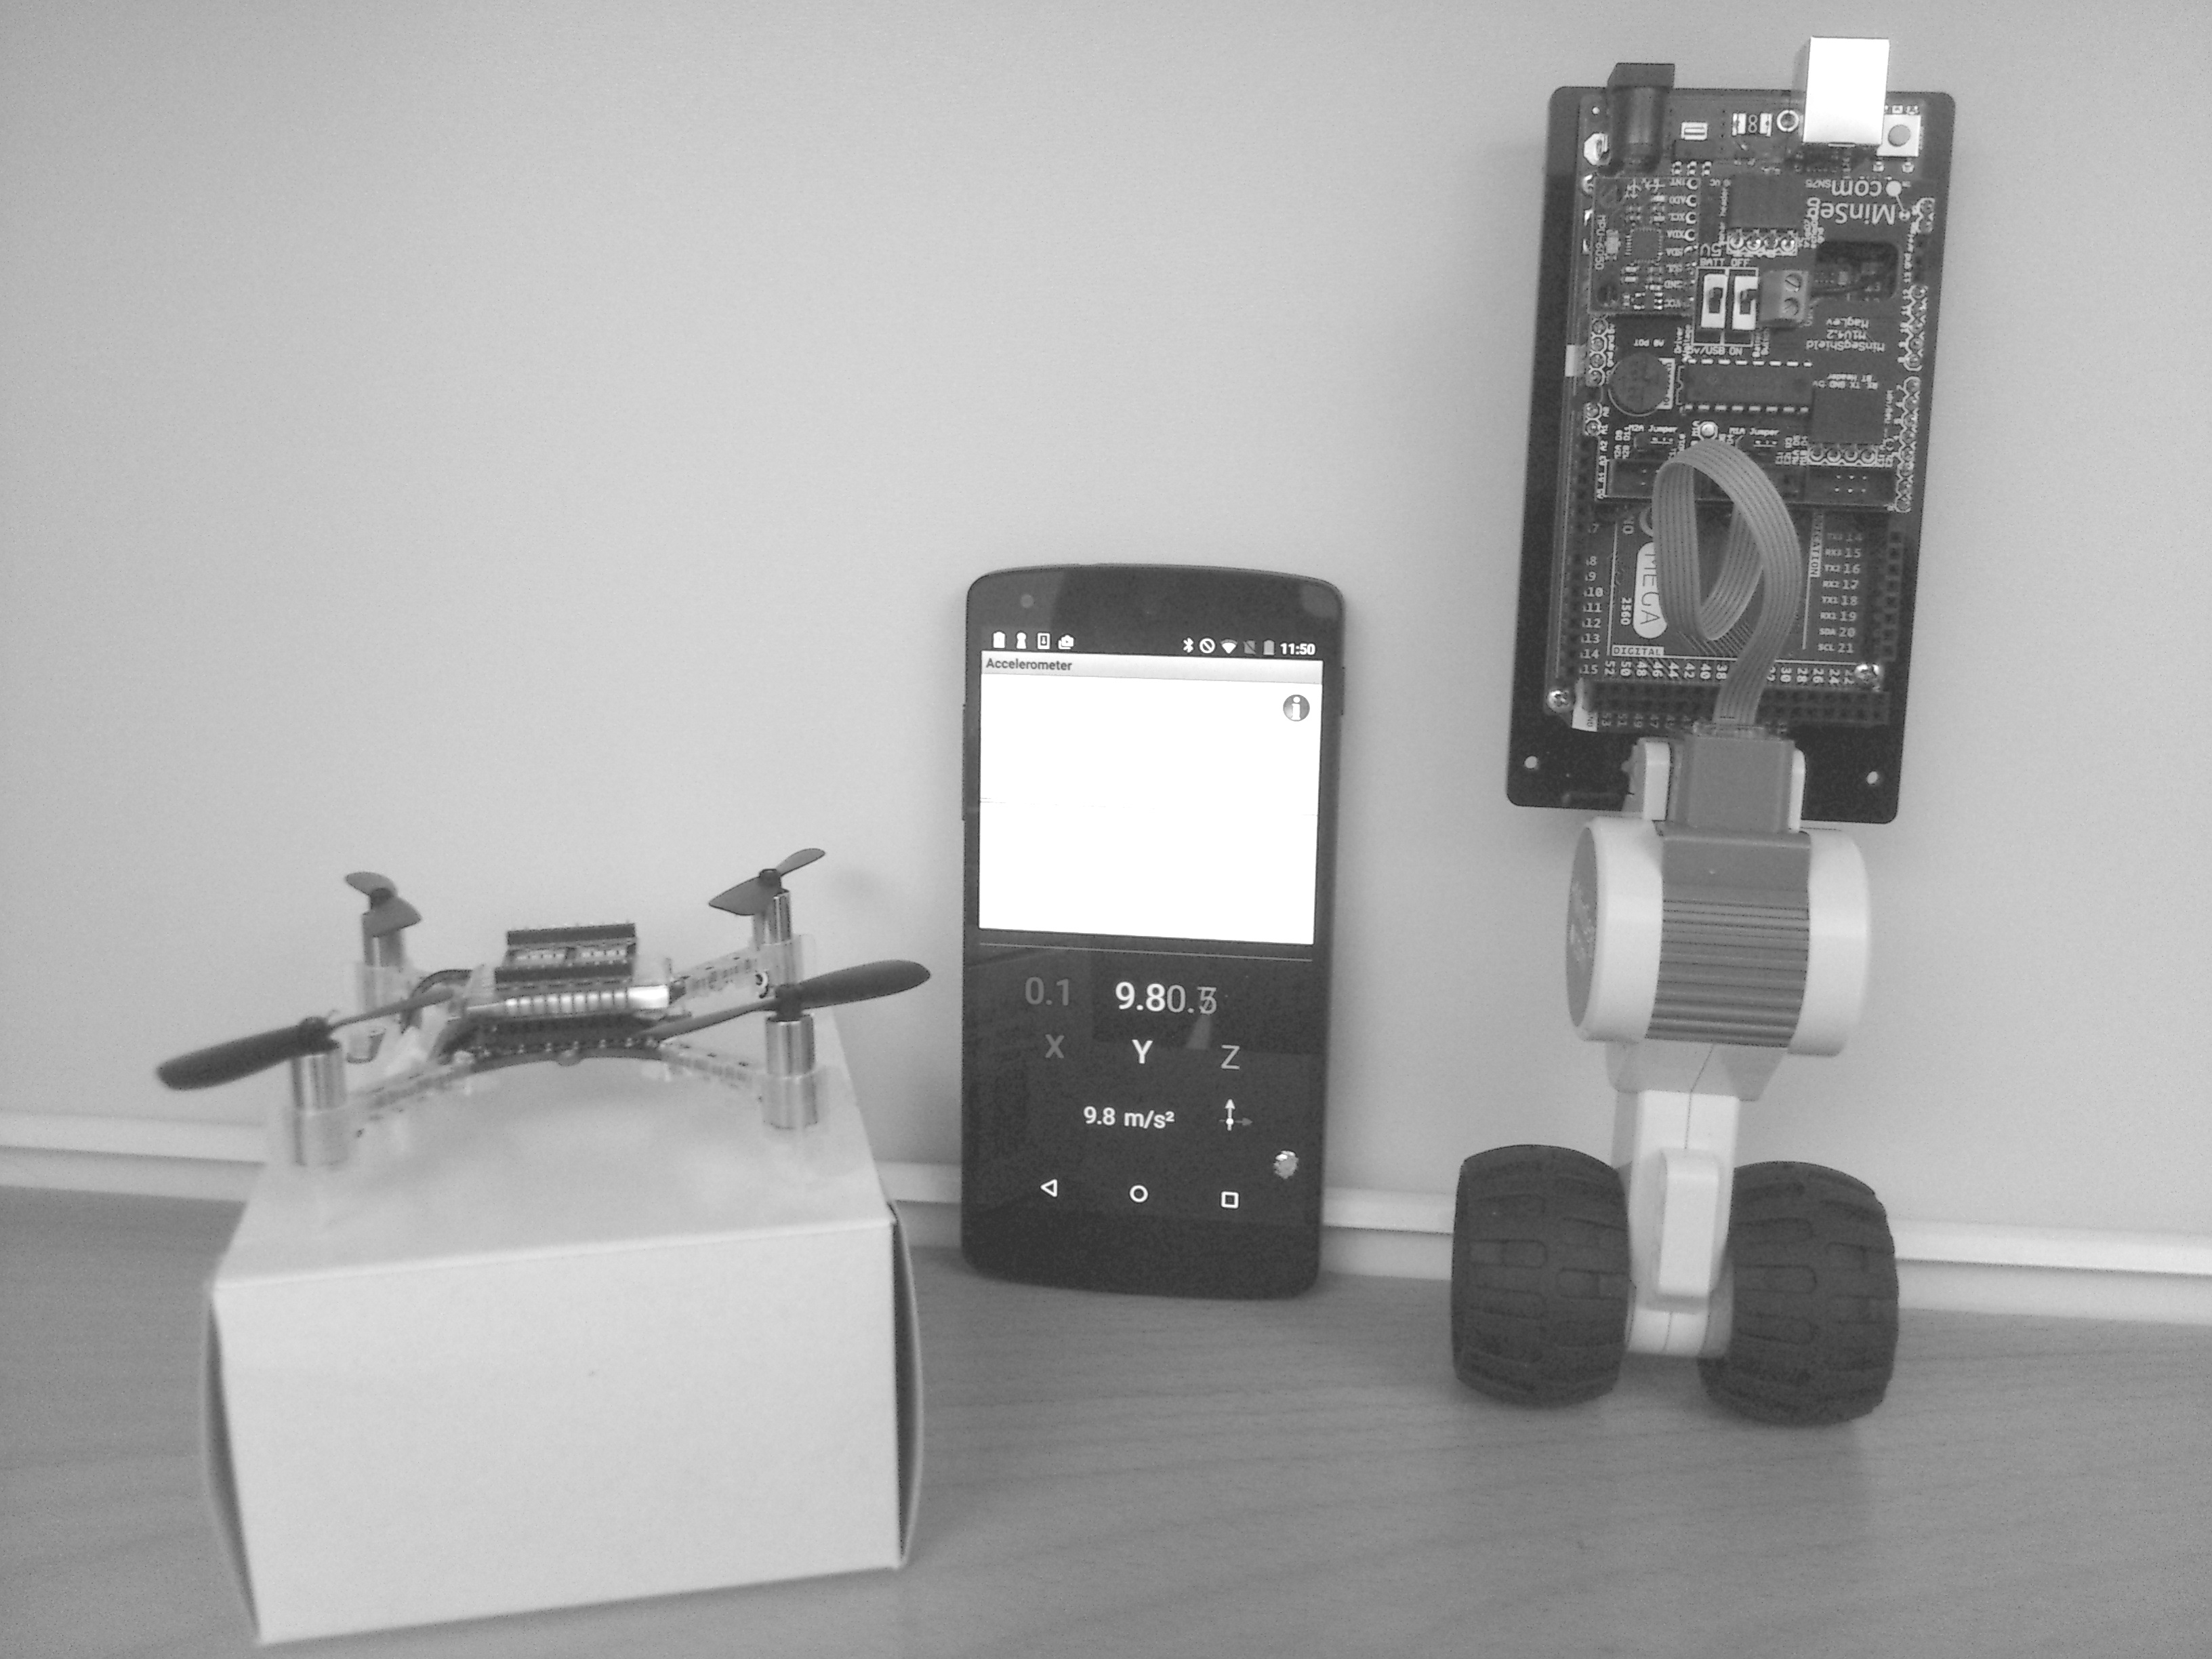 2 KAPITEL. SENSORER OCH MÄTTEKNIK Figur.: Exempel på system med sensorer. Quadcoptern till vänster (CrazyFlie) har en 3-axlig accelerometer, ett 3-axligt gyro samt en barometer.